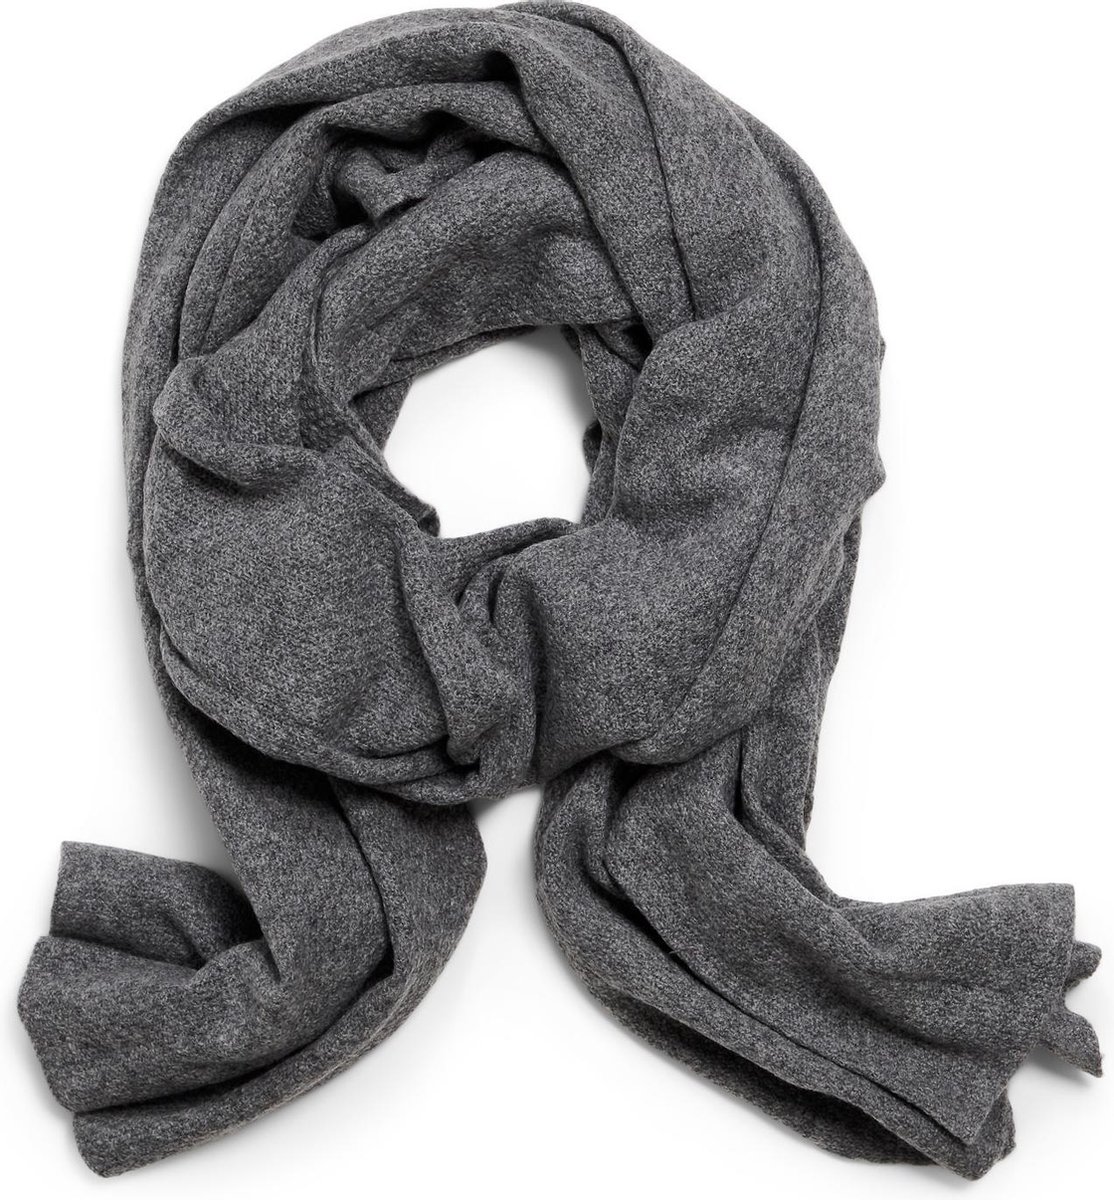 Cashmere and Scarves - Sjaal Eva - Vintage Grey / Grijs - Samenstelling 90% Wool / 10% Cashmere